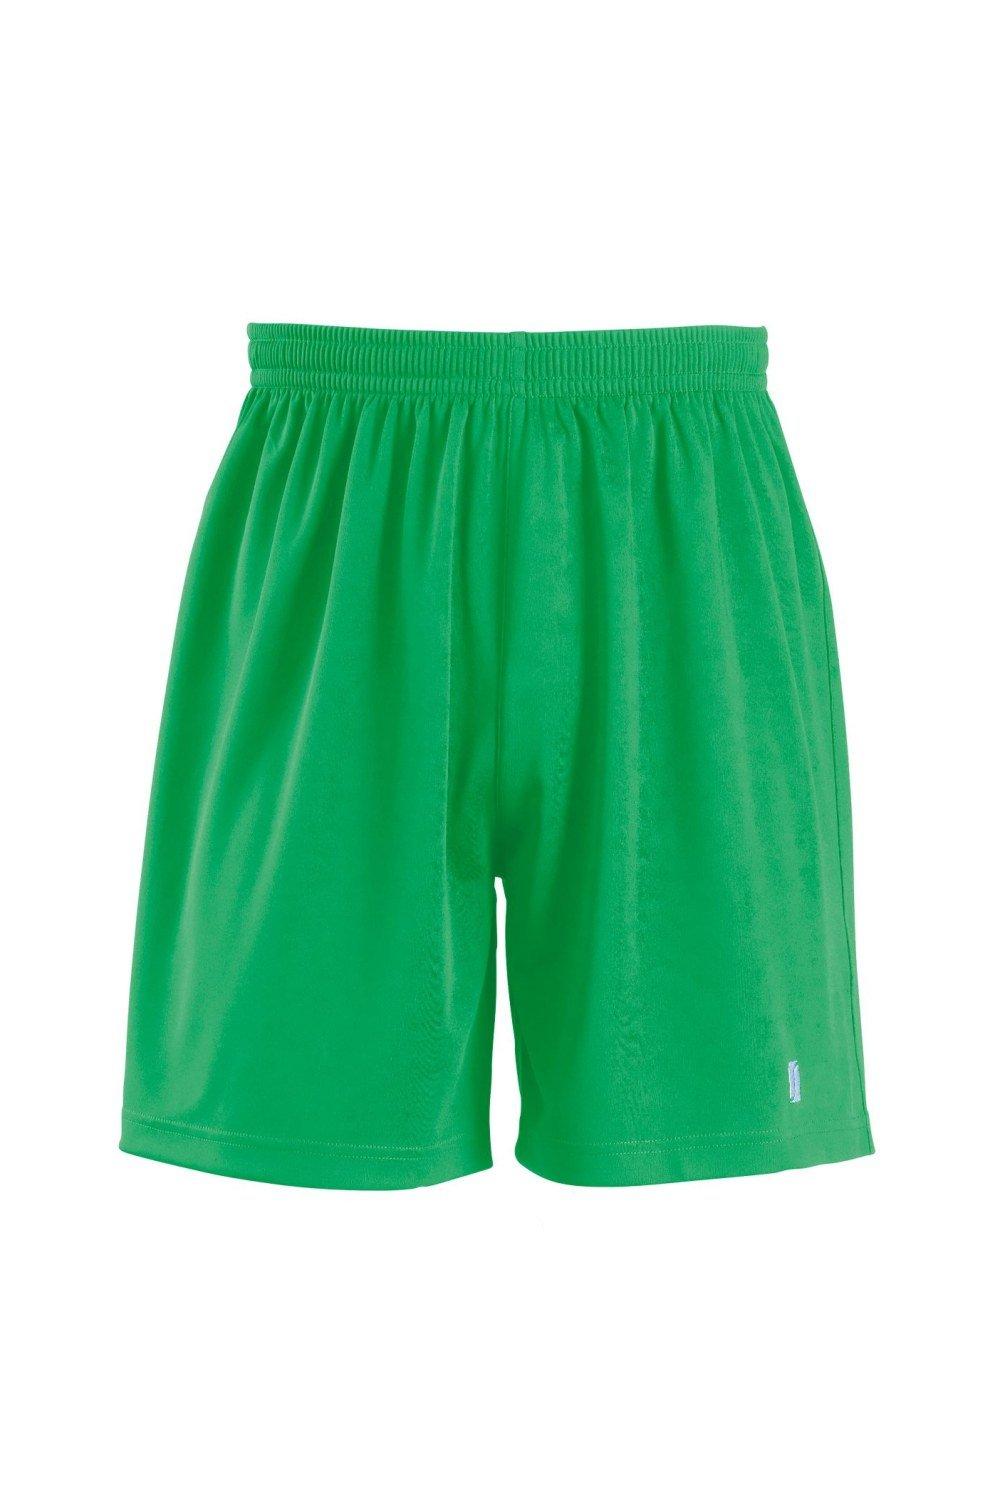 San Siro 2 Sport Shorts